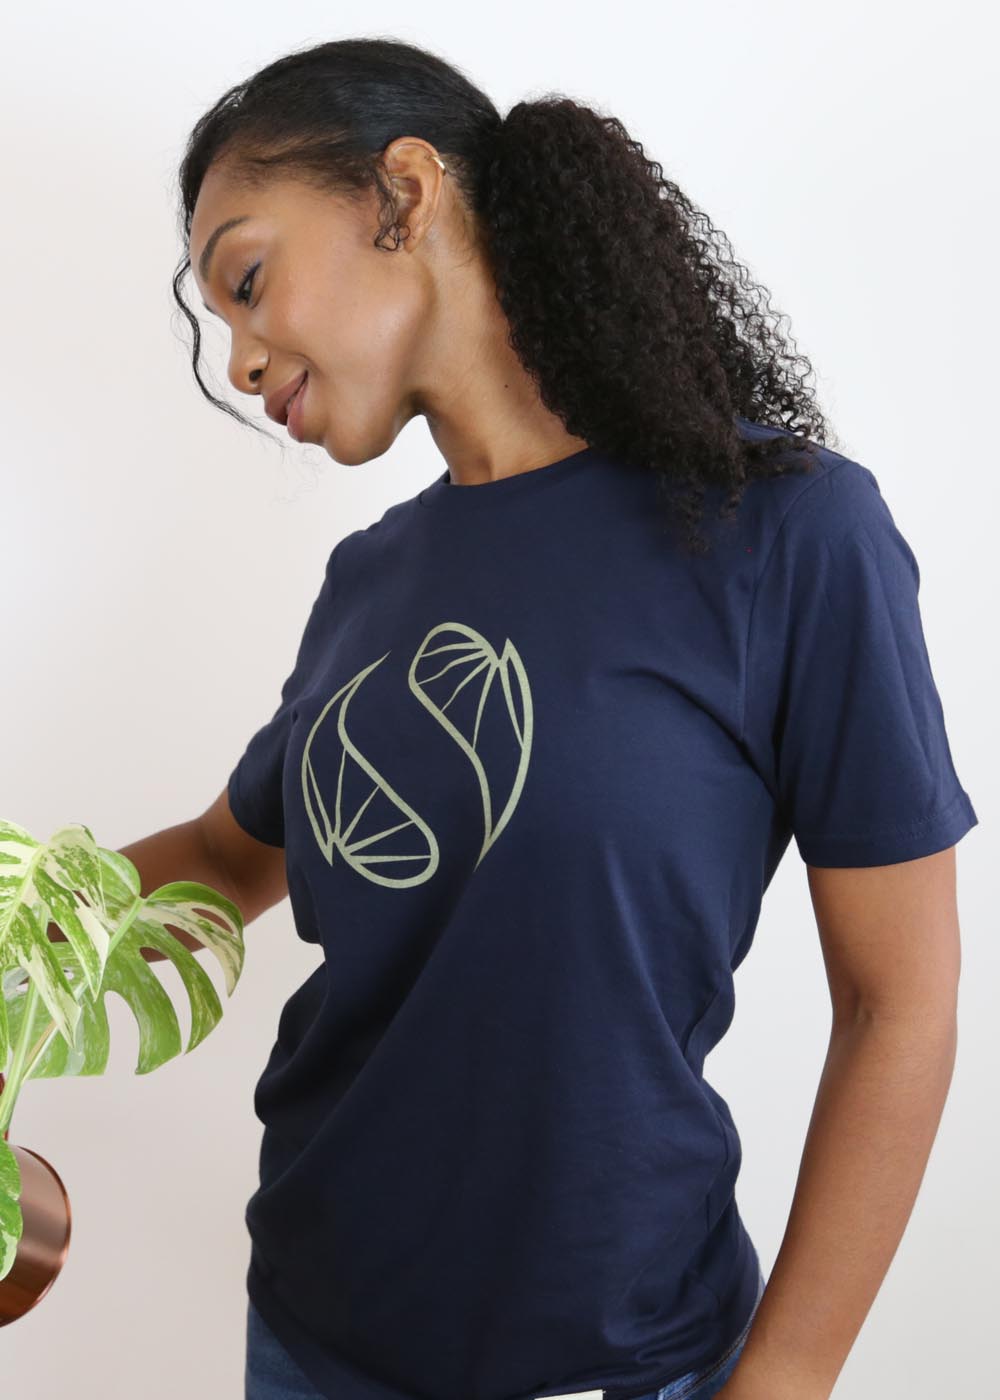 Soltech Organic Unisex Tee Shirt